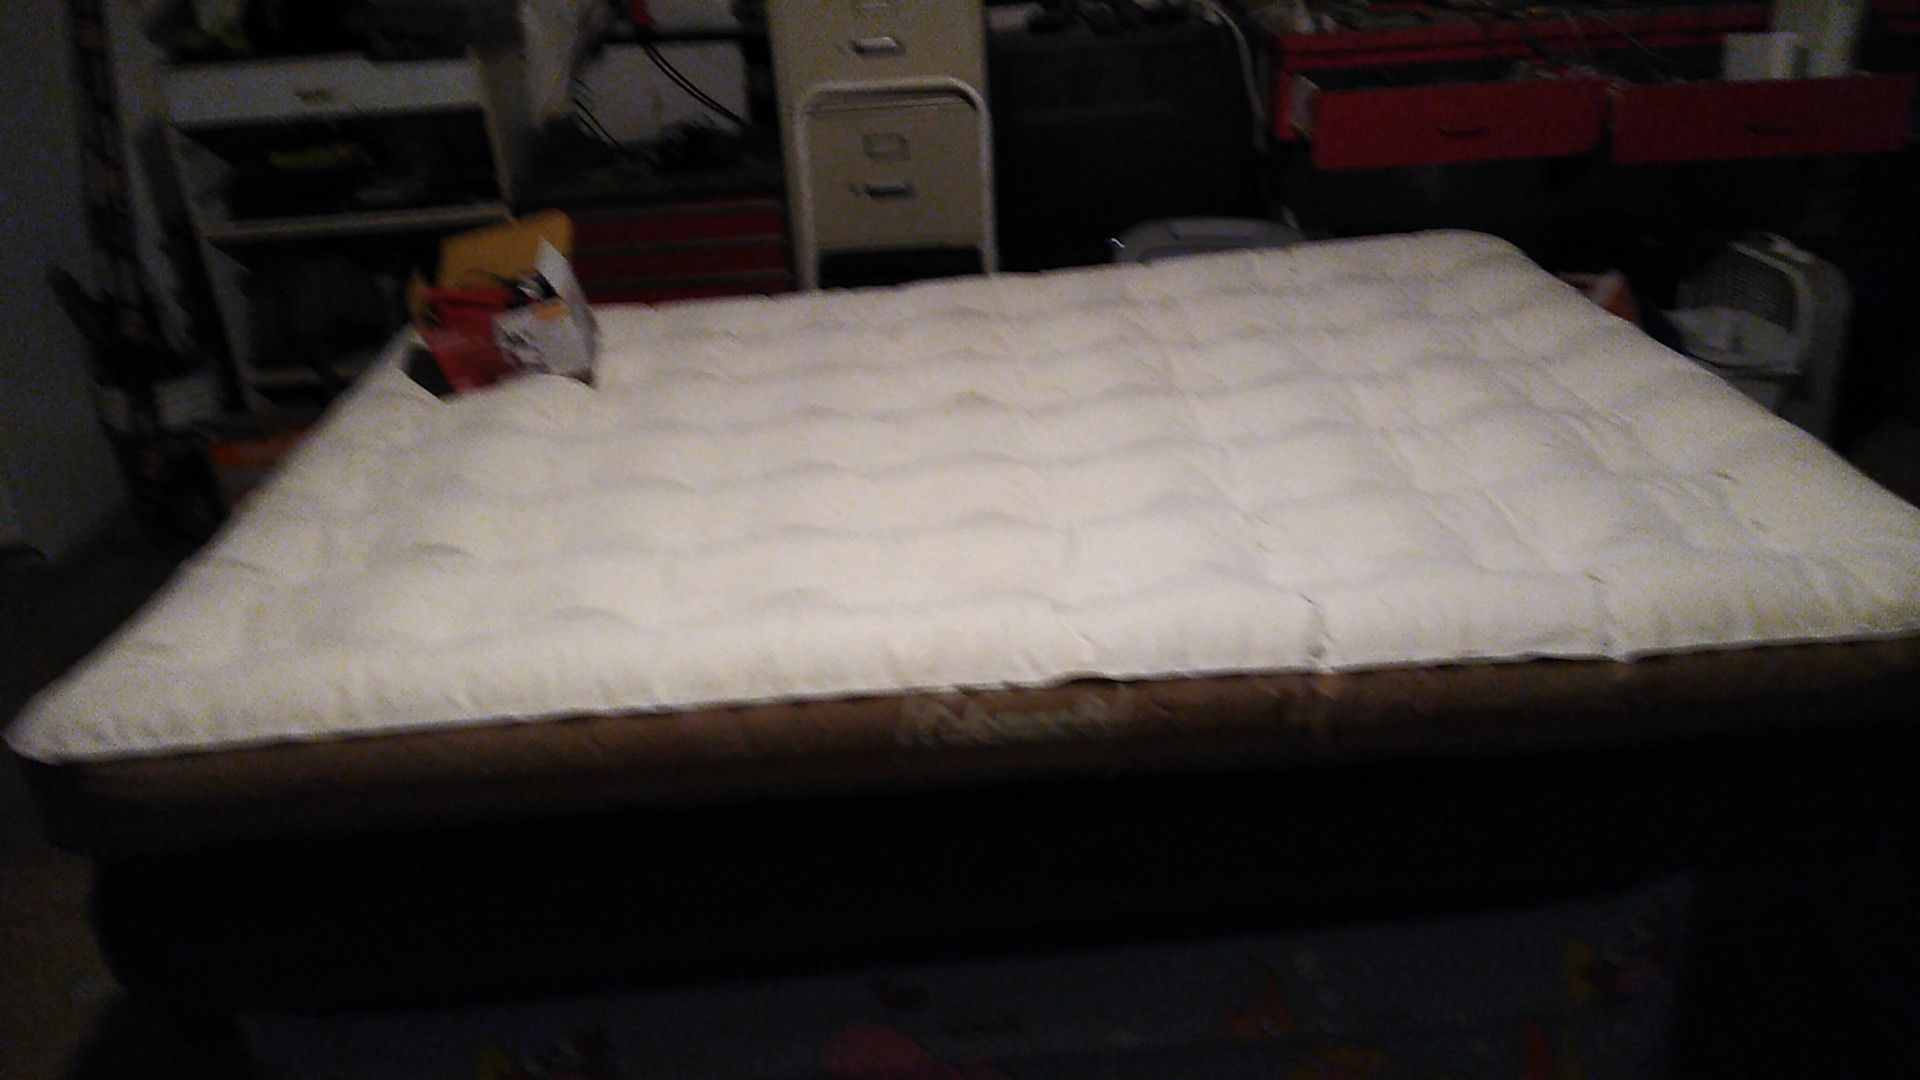 Brand new Coleman queen-size air mattress with pump